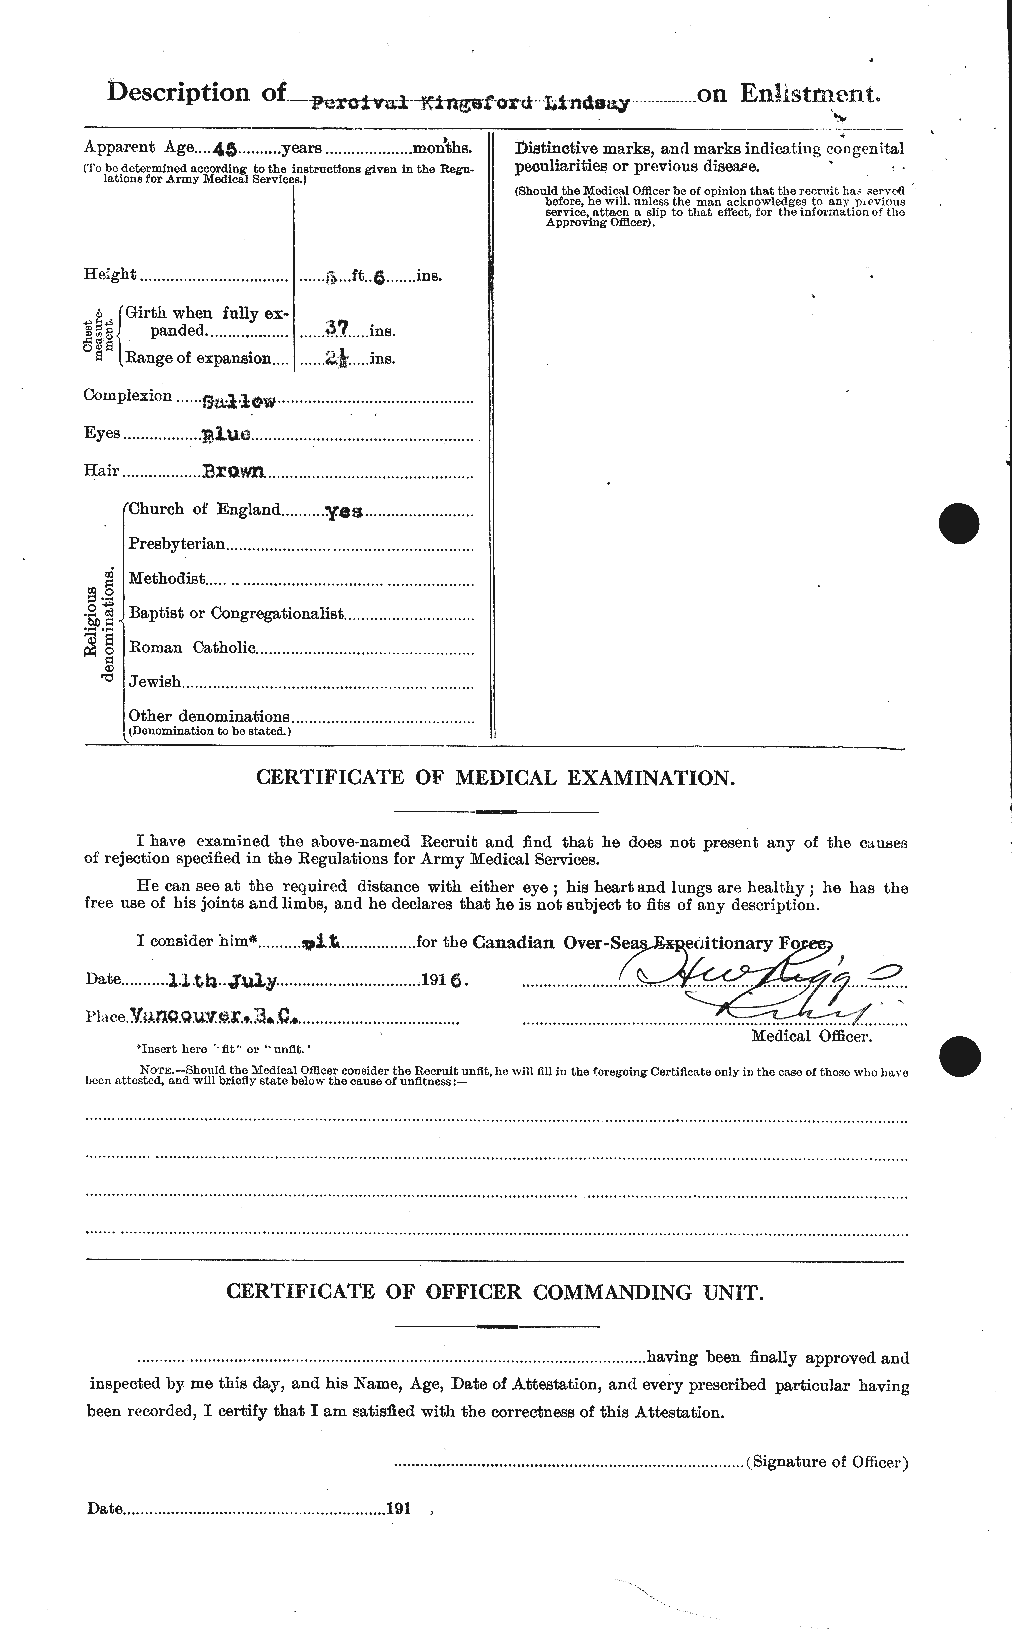 Dossiers du Personnel de la Première Guerre mondiale - CEC 466167b